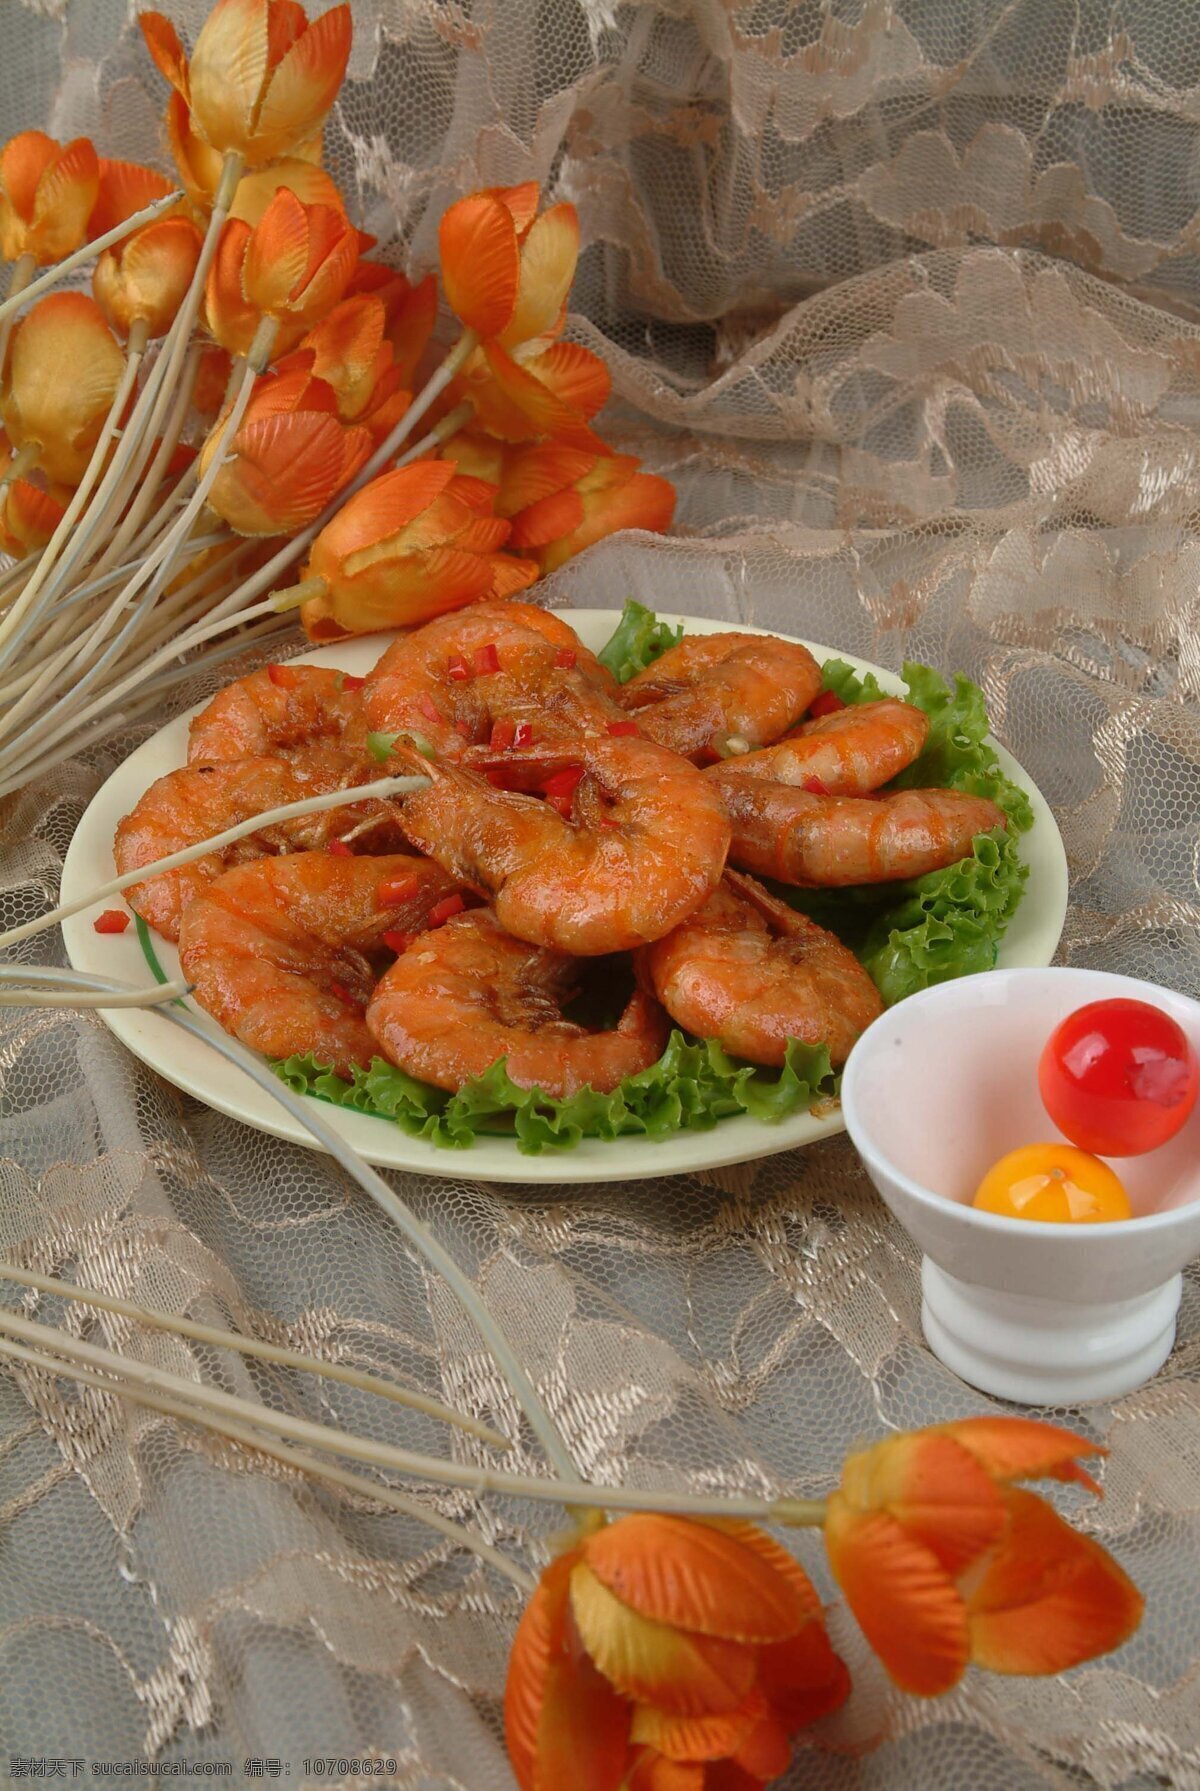 椒盐大虾 大虾 虾米 美食 中华美食 传统美食 菜品 菜 佳肴 美味 肉类 食物 餐饮美食